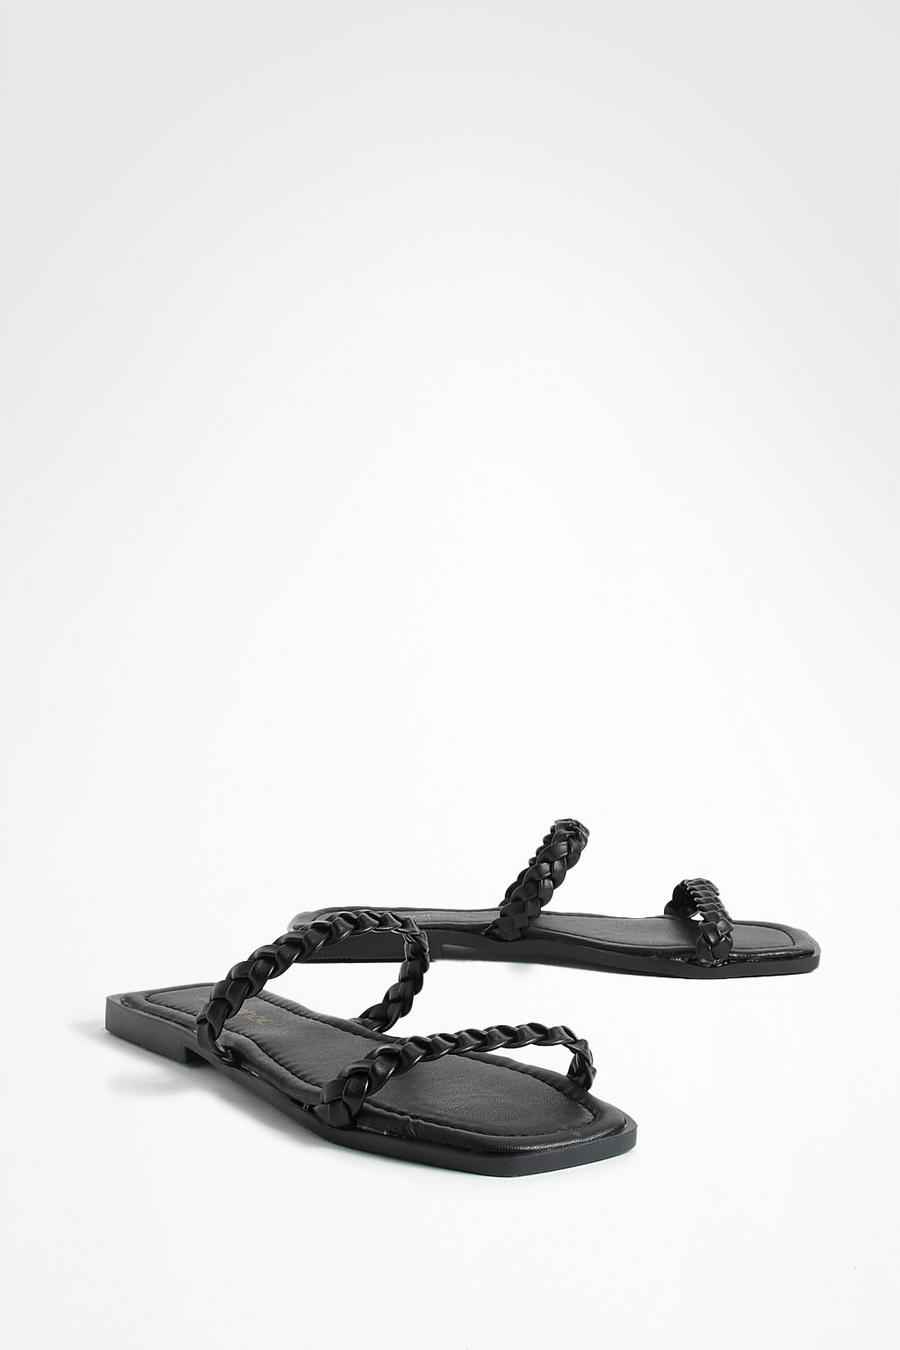 Sandali a punta quadrata con doppia fascetta intrecciata, Black negro